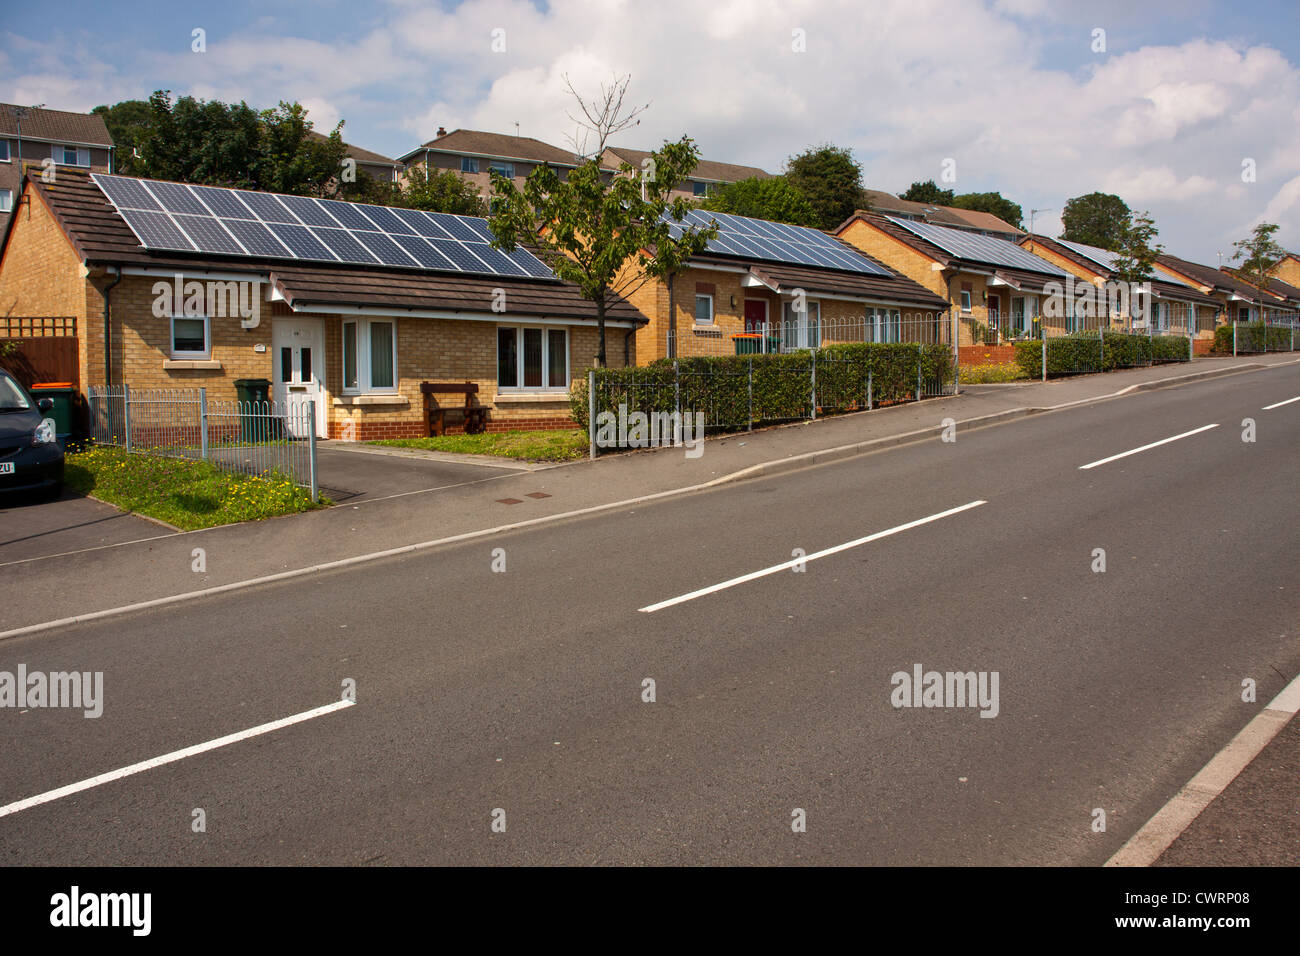 Solar Photovoltaik-Solarzellen auf Bungalows, kostenlosem Strom zu schaffen. Stockfoto